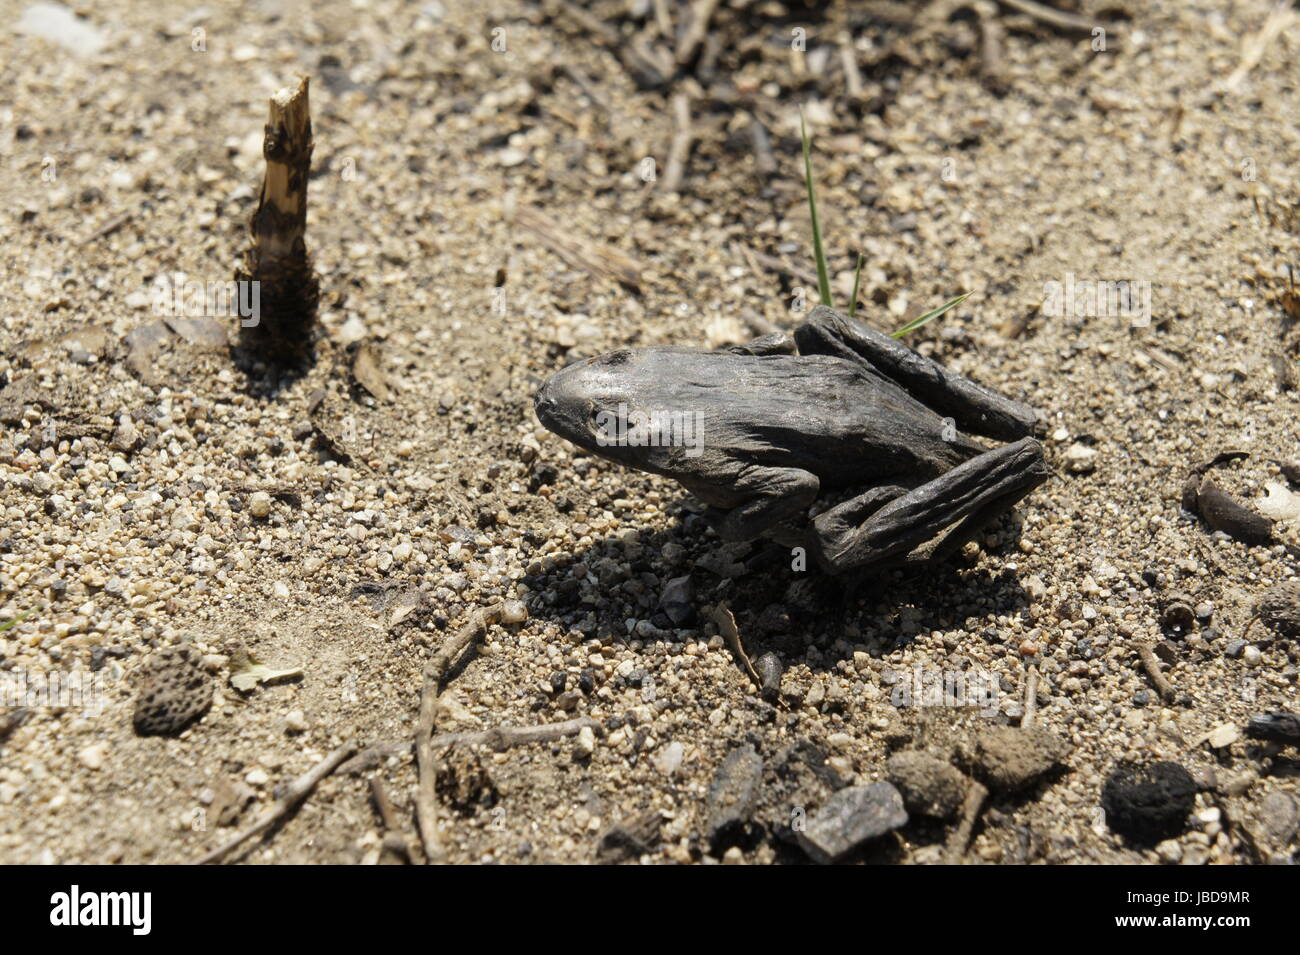 Verkohlter frosch im Wald nahe la jonquera, spanisch-franzoesisches grenzgebiet, nach waldbraenden sommer 2012, verkohlte baeume Foto Stock